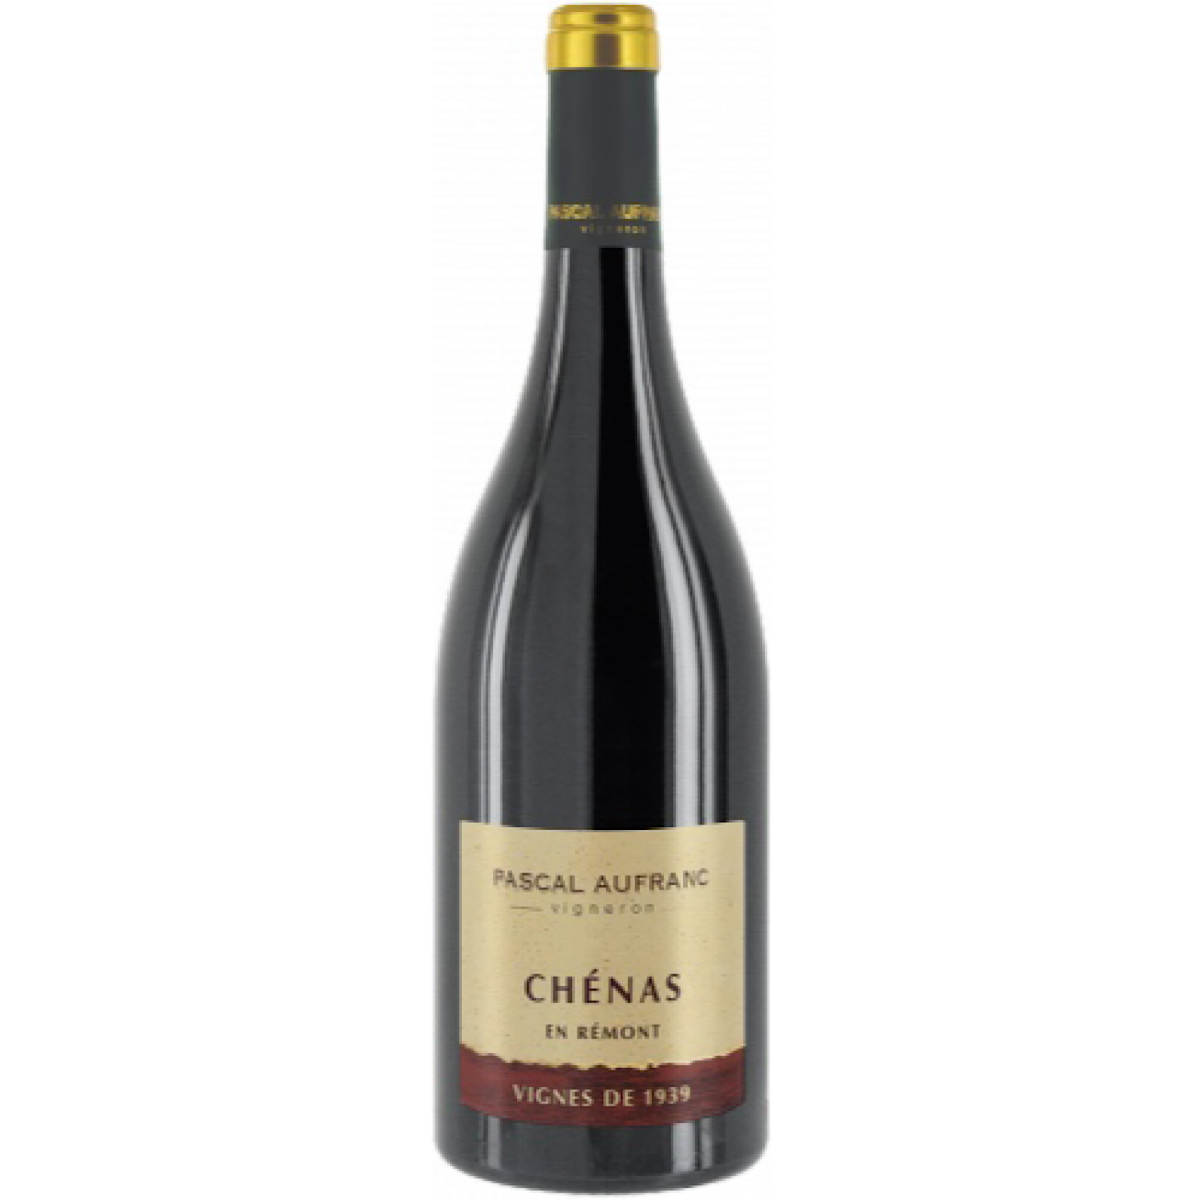 Chénas ‘Vignes de 1939’ 2016, Pascal Aufranc 6 Bottle Case 75cl